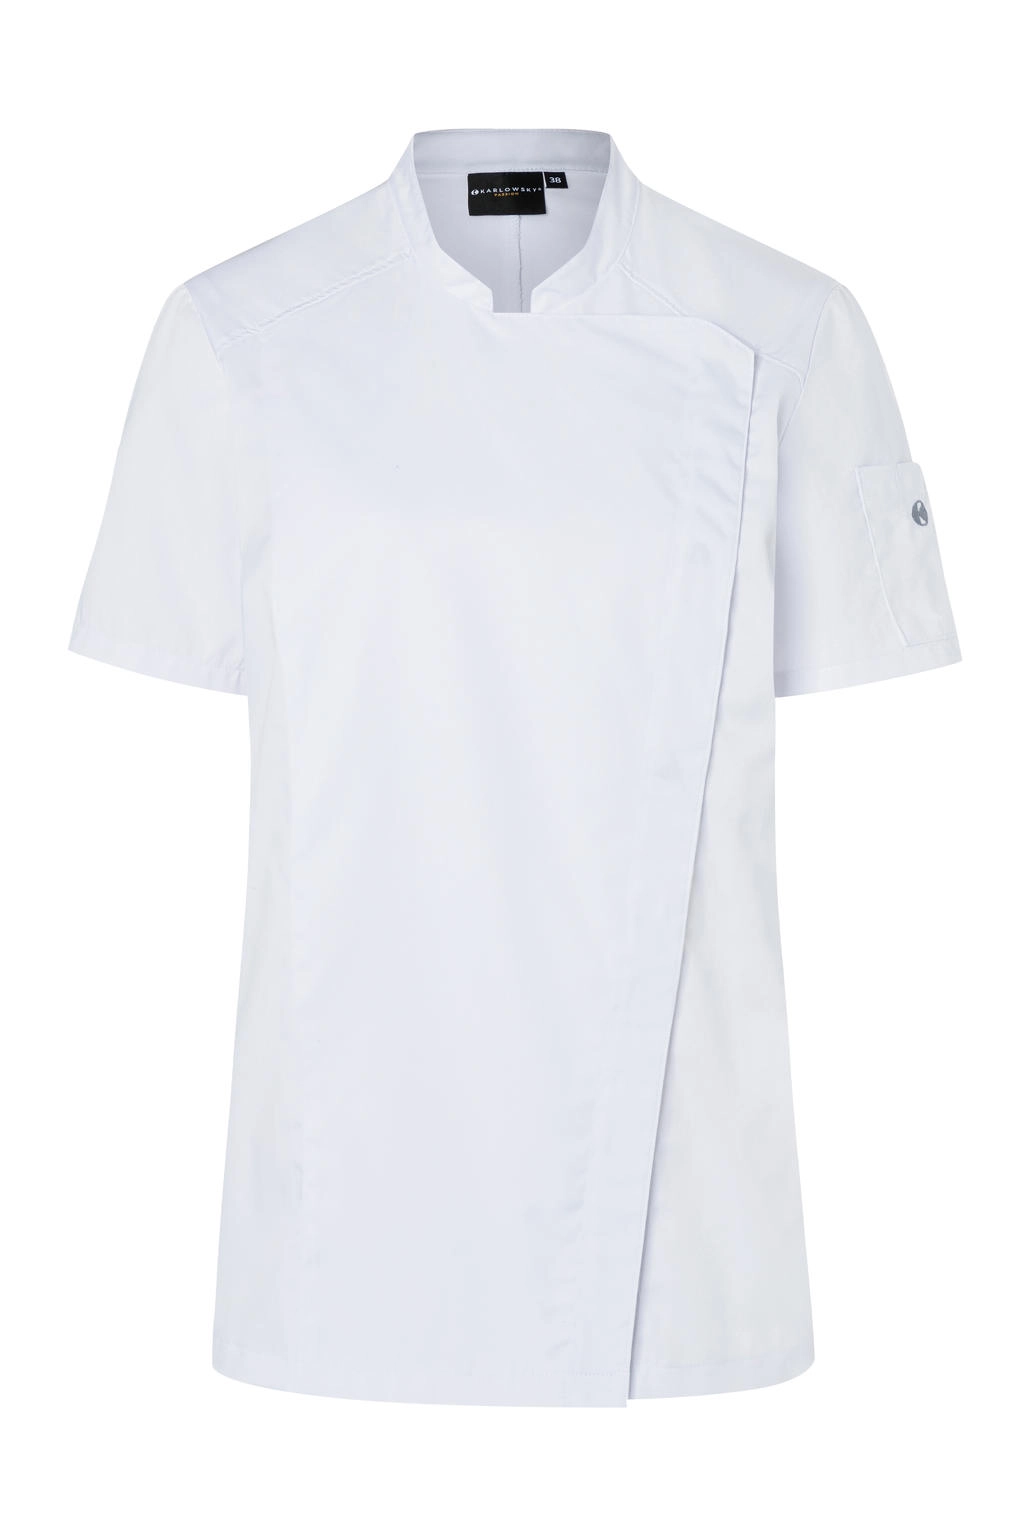 Short-Sleeve Ladies` Chef Jacket Modern-Look zum Besticken und Bedrucken in der Farbe White mit Ihren Logo, Schriftzug oder Motiv.